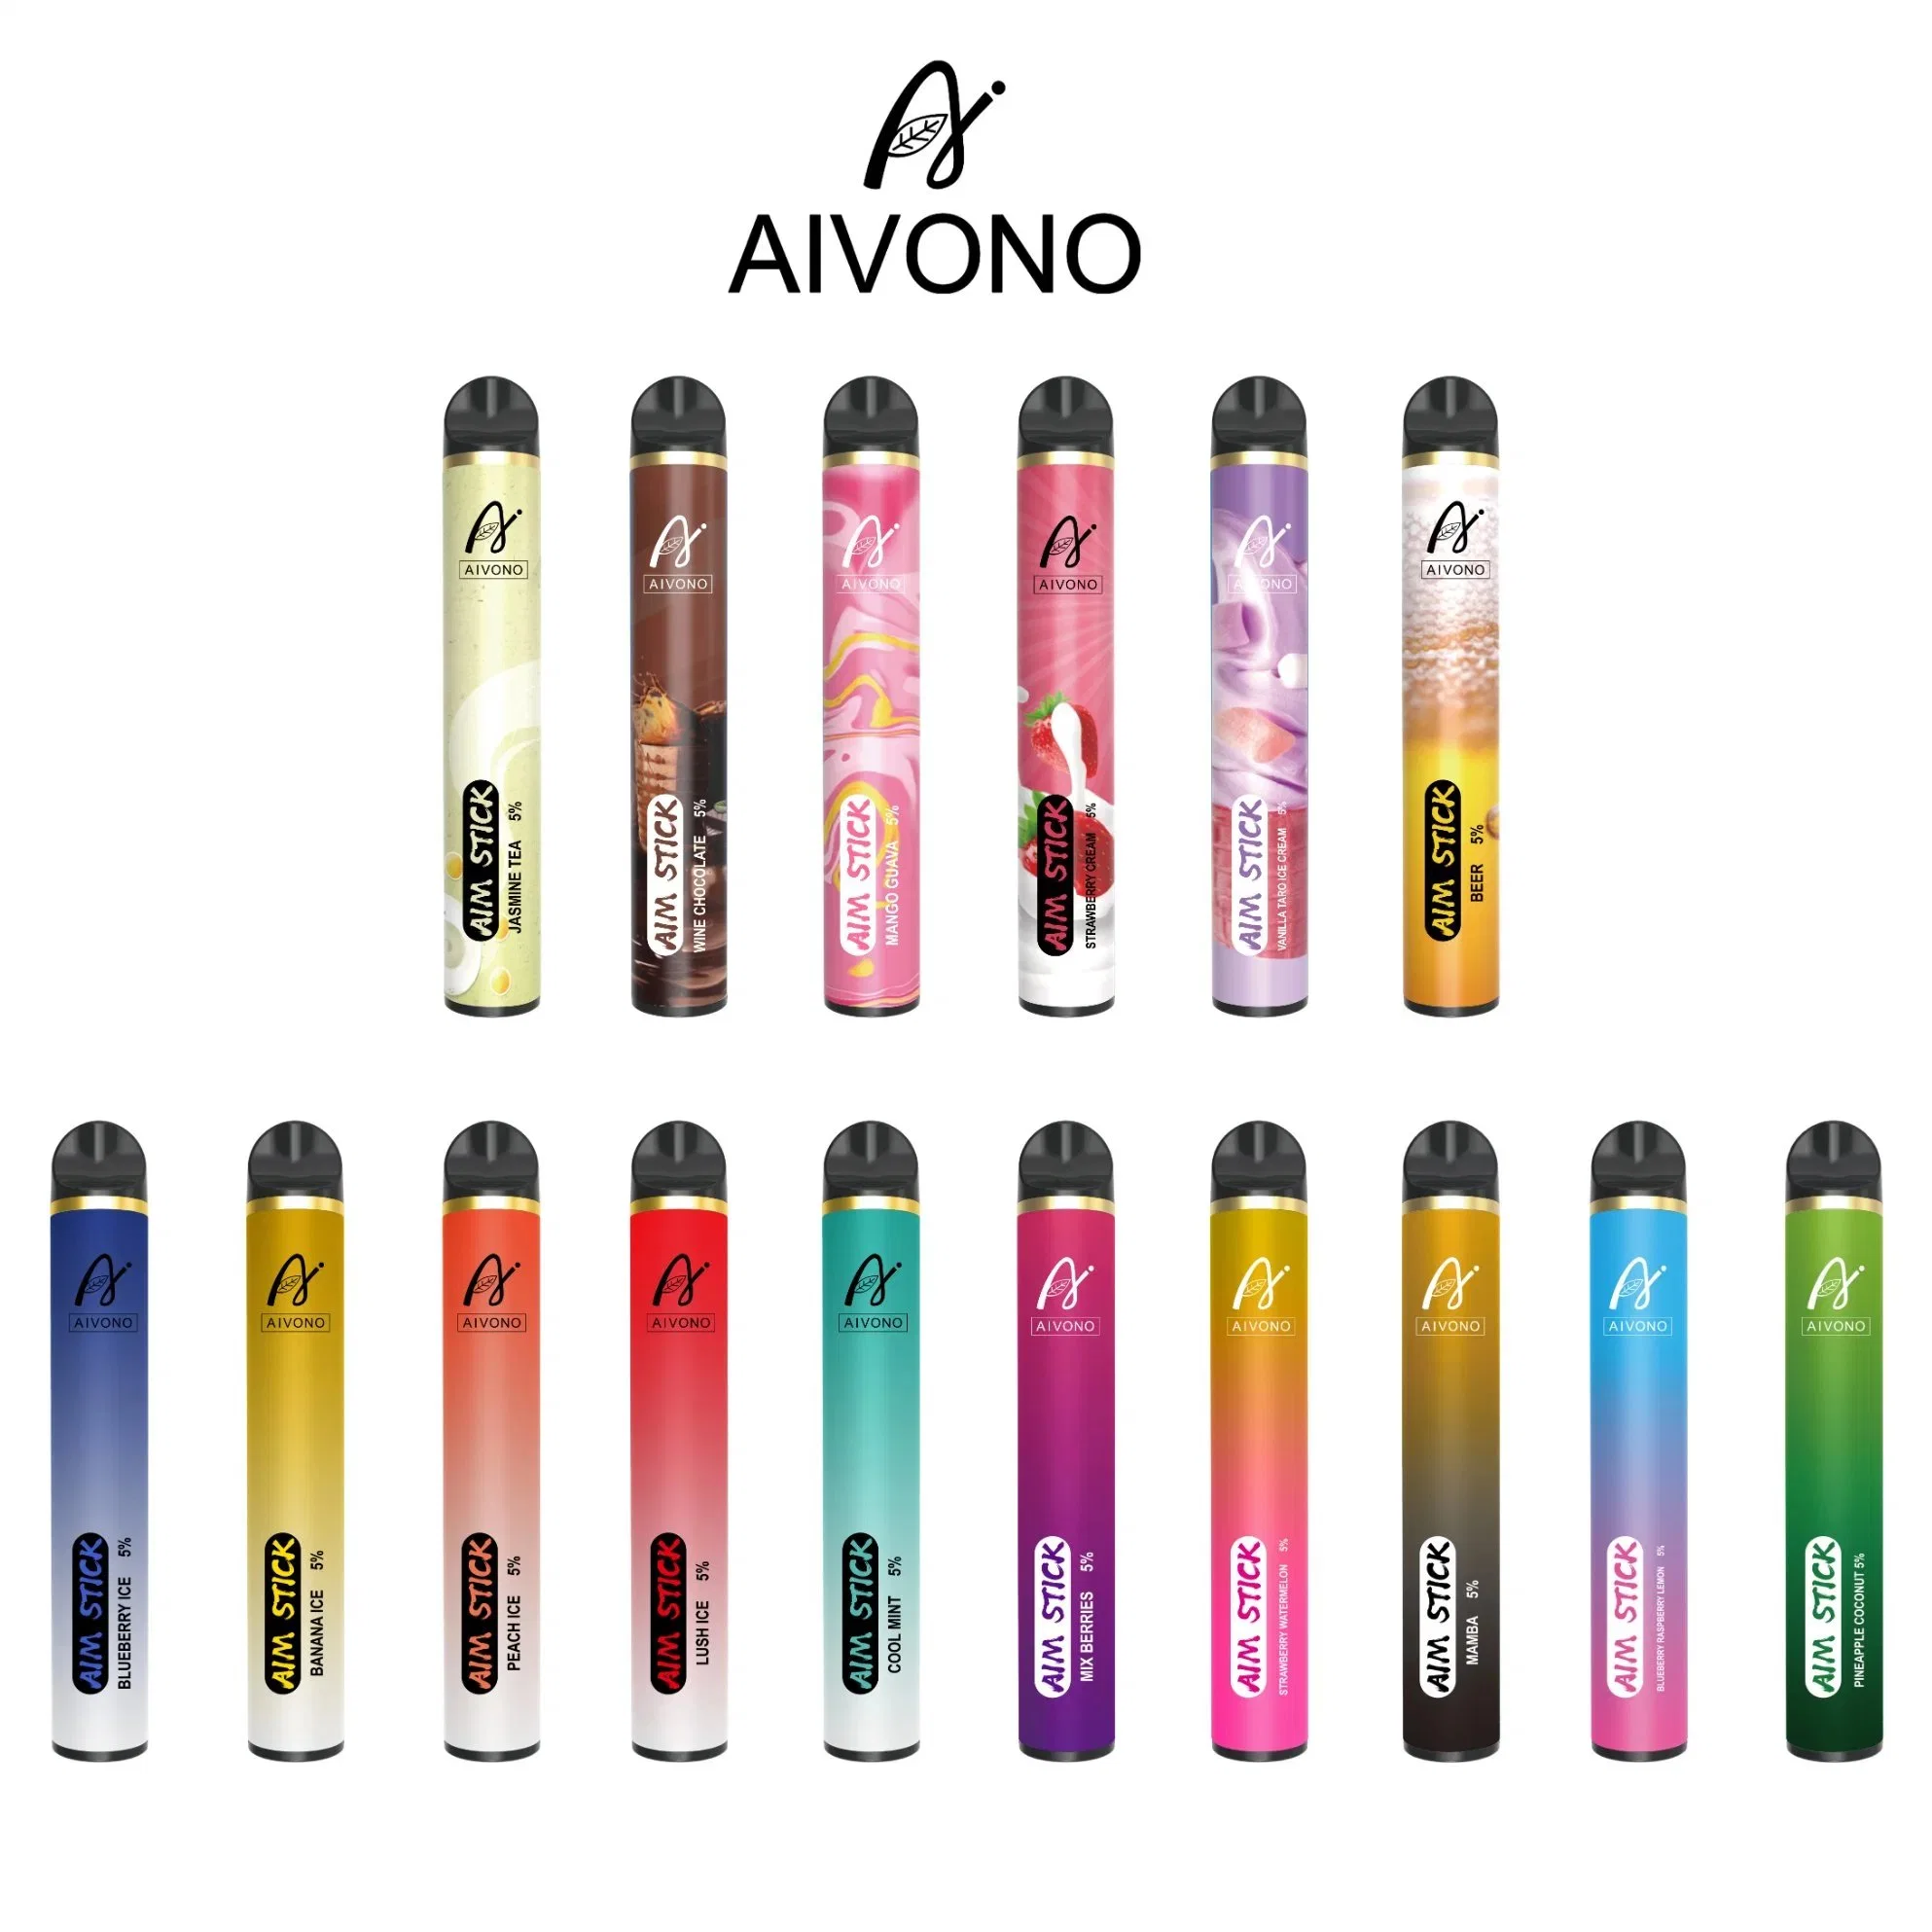 Newest Original Unique Design Aivono Aim Stick 9ml 12 Flavors Electronic Cigarette Vaporizer 0%/2% 5% Nicotine Mini Vape Wholesale Vape Pen Cigar Disposable